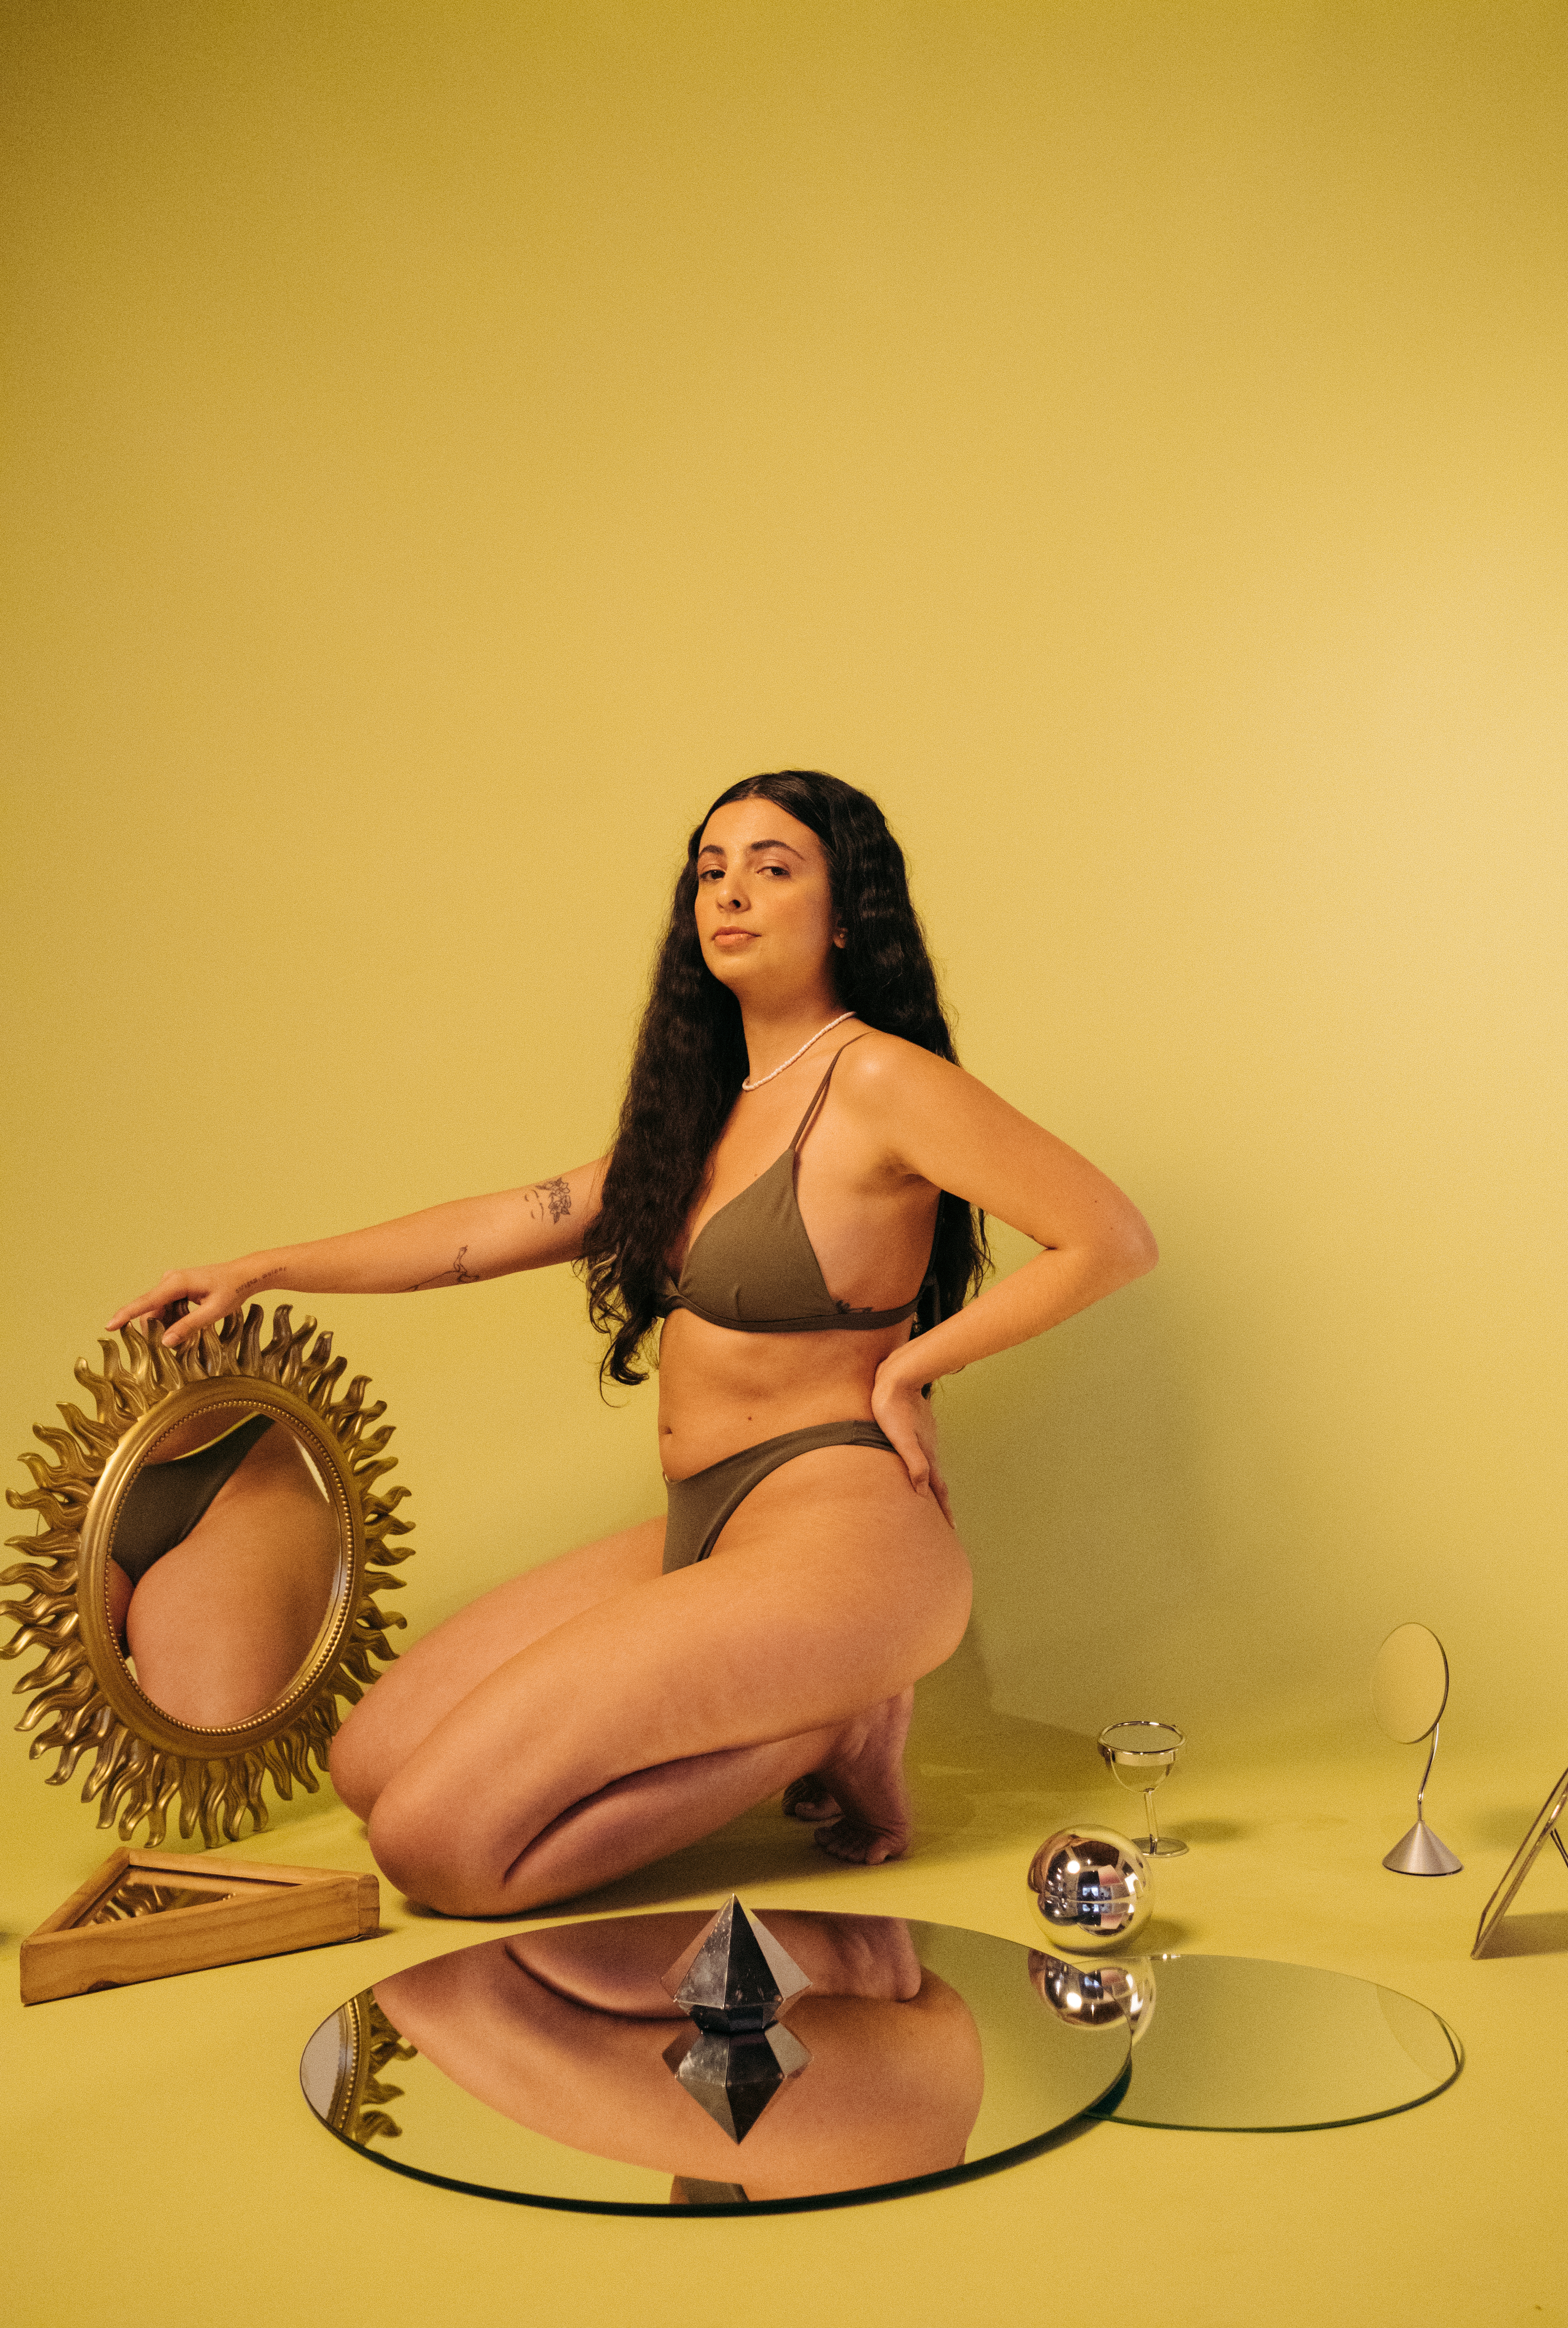 Ilustradora Lela Brandão usando biquíni marrom da sua própria marca, agachada com uma das mãos no quadril, segurando um espelho e com expressão facial séria